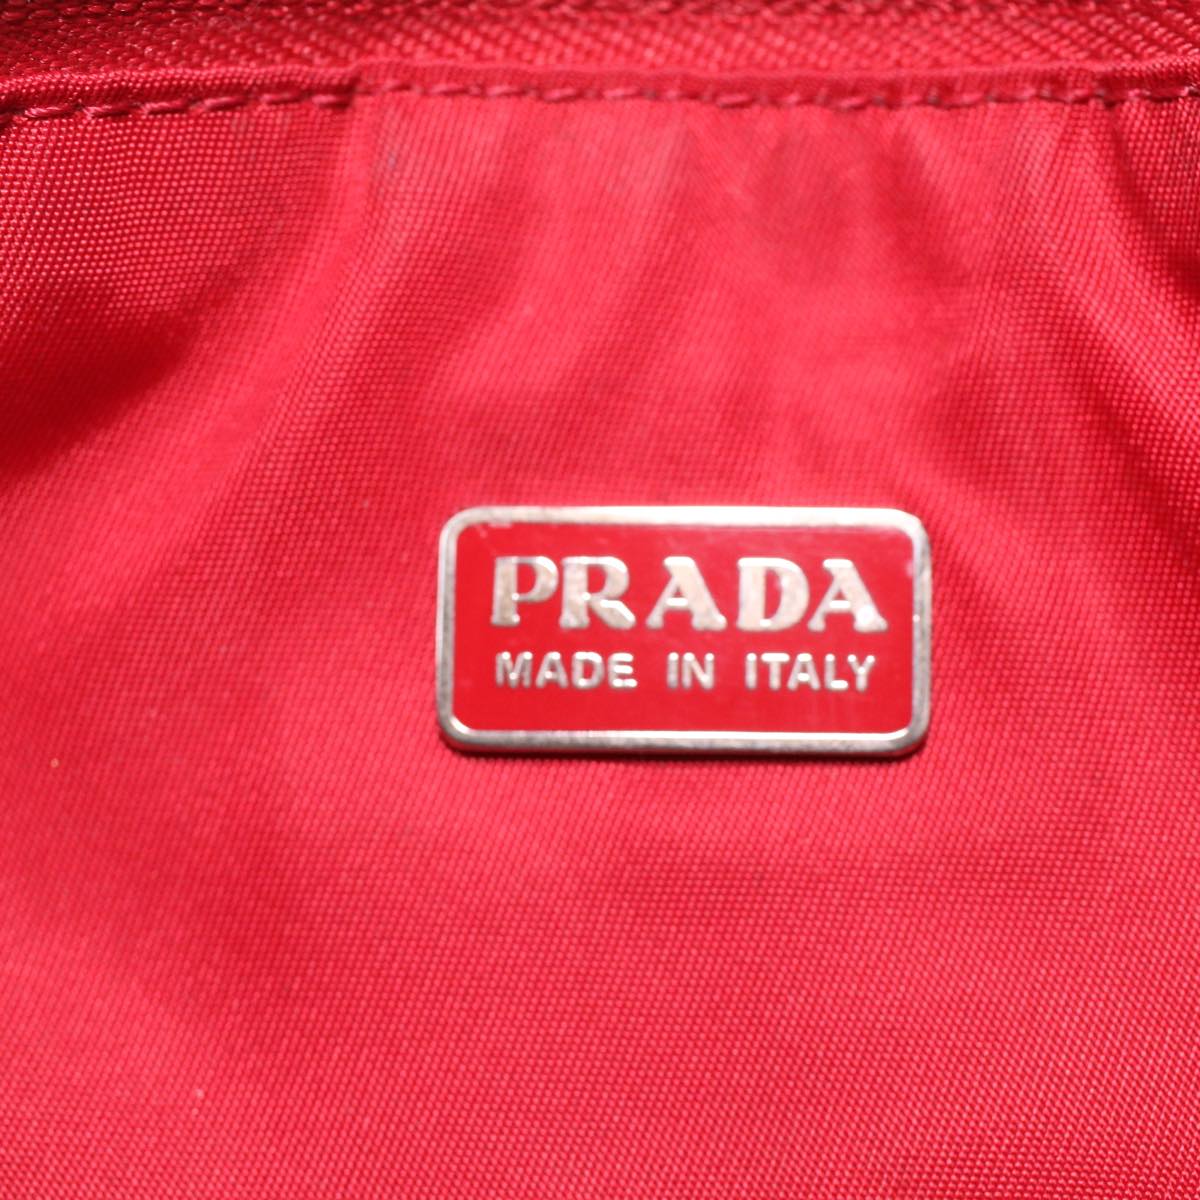 PRADA Accessory Pouch Nylon Red Auth 36972